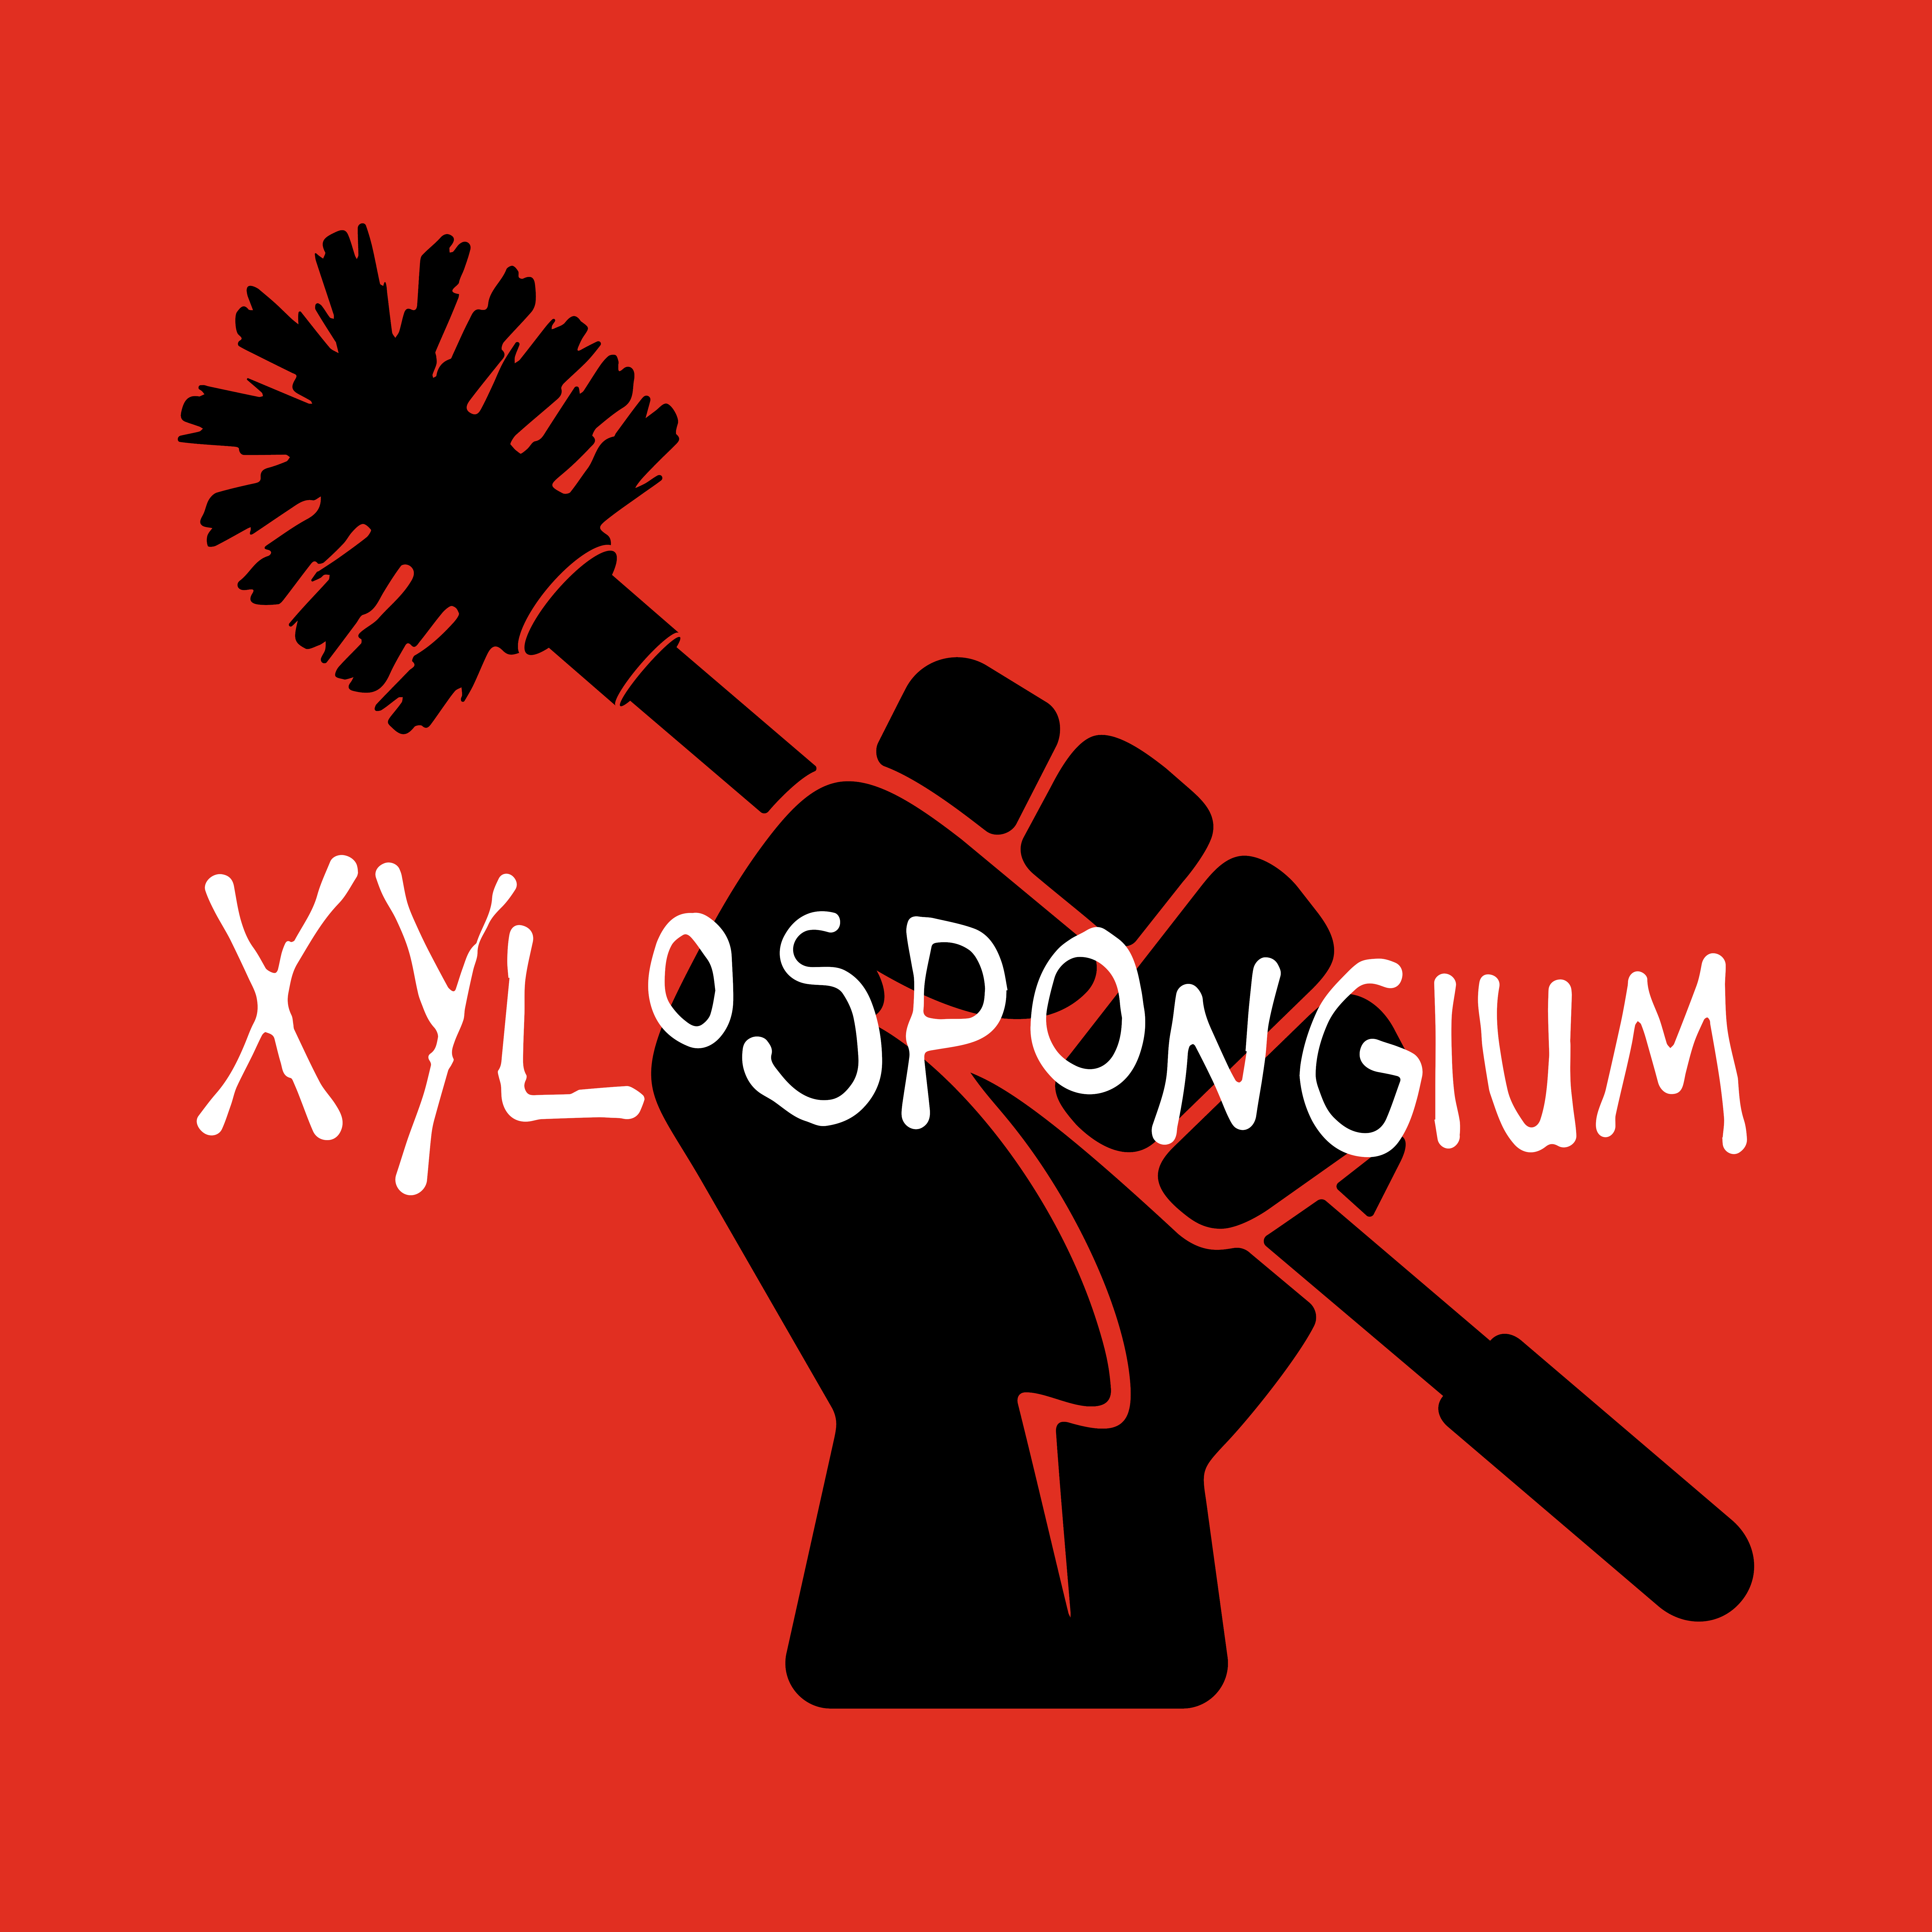 XYLOSPONGIUM & Taken from None